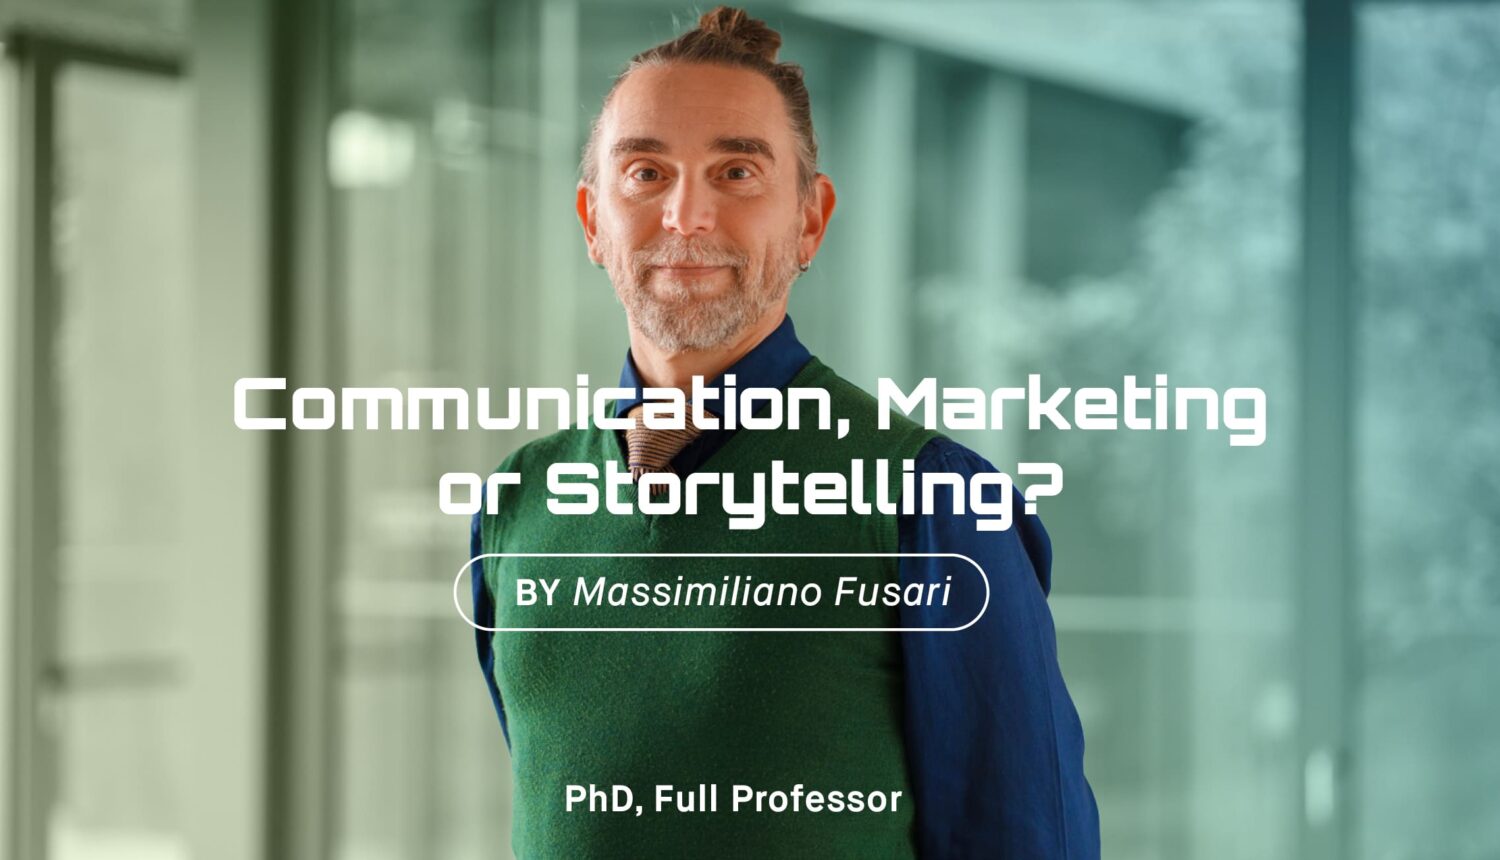 Communication, Marketing or Storytelling?